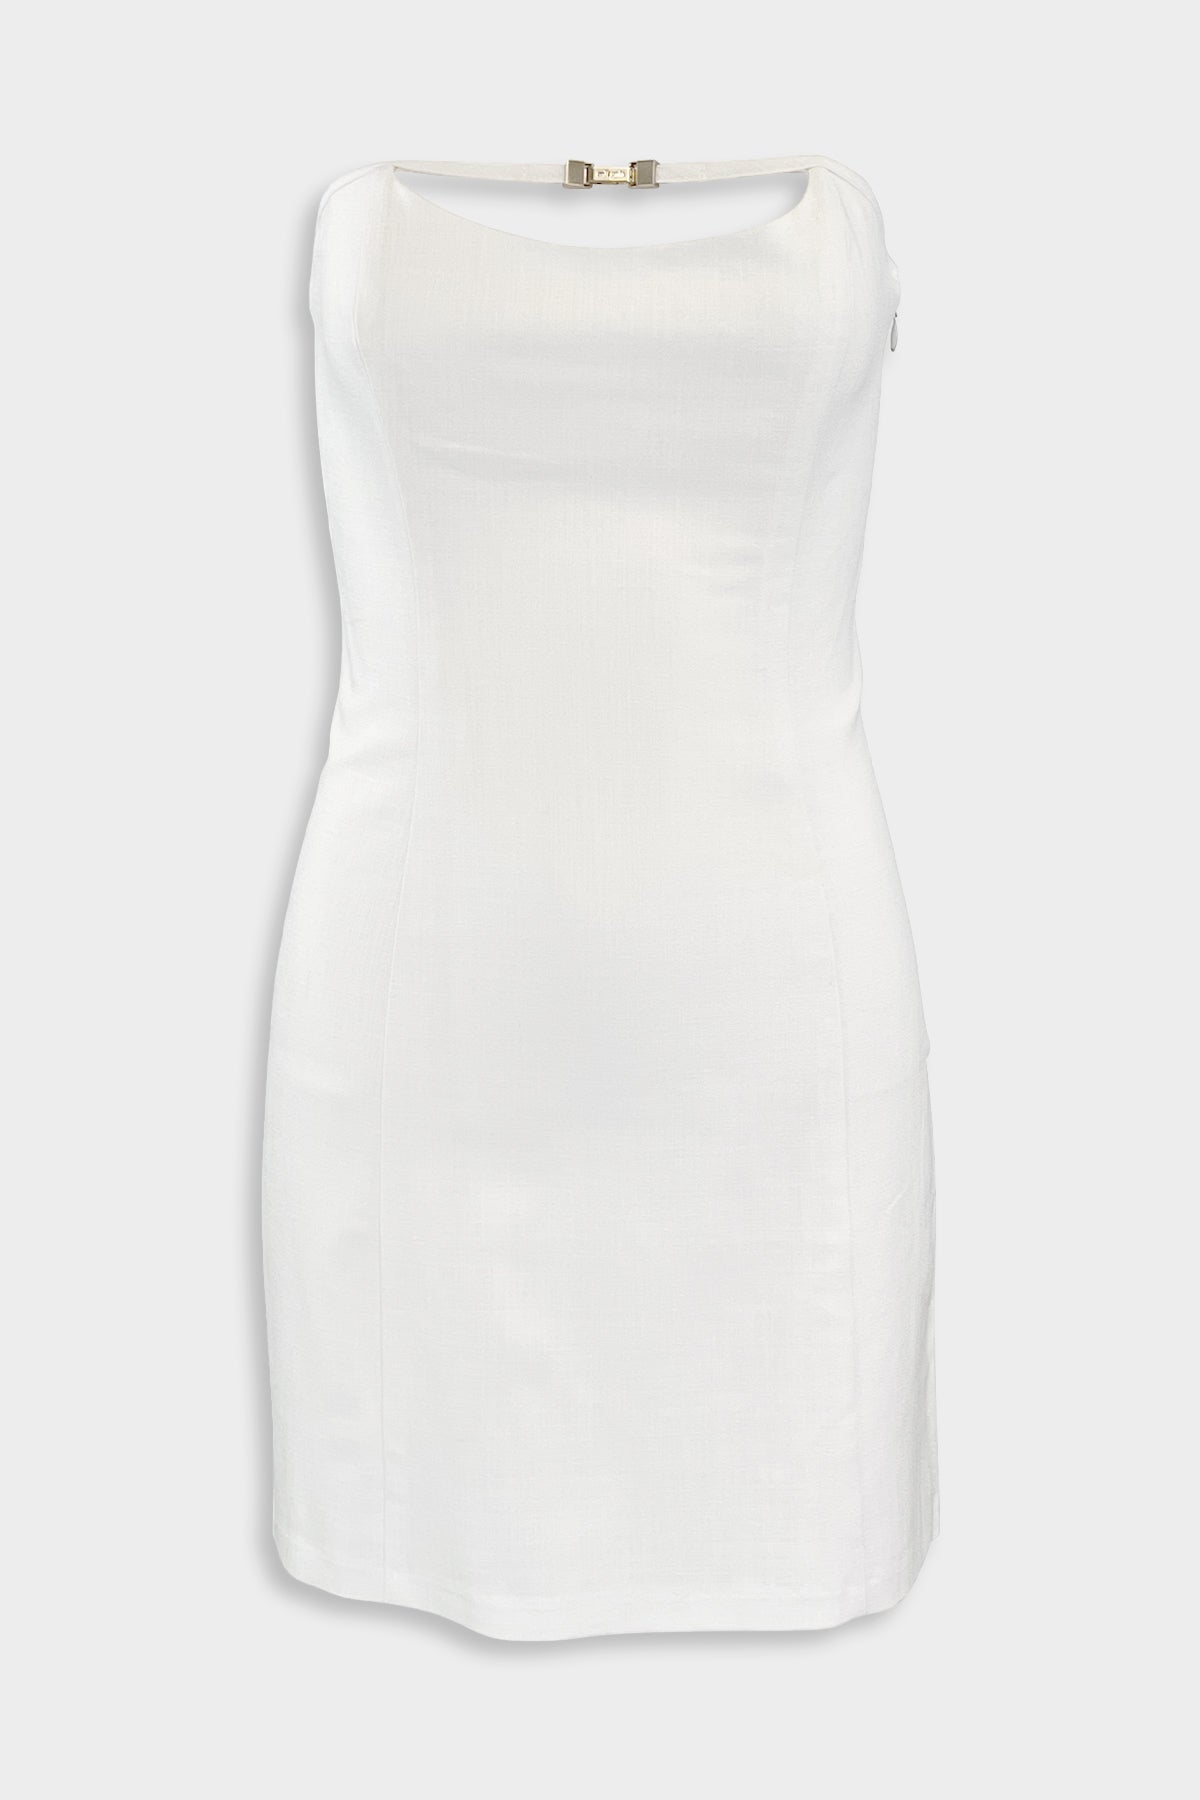 Jaslene Dress in Off-White - shop-olivia.com